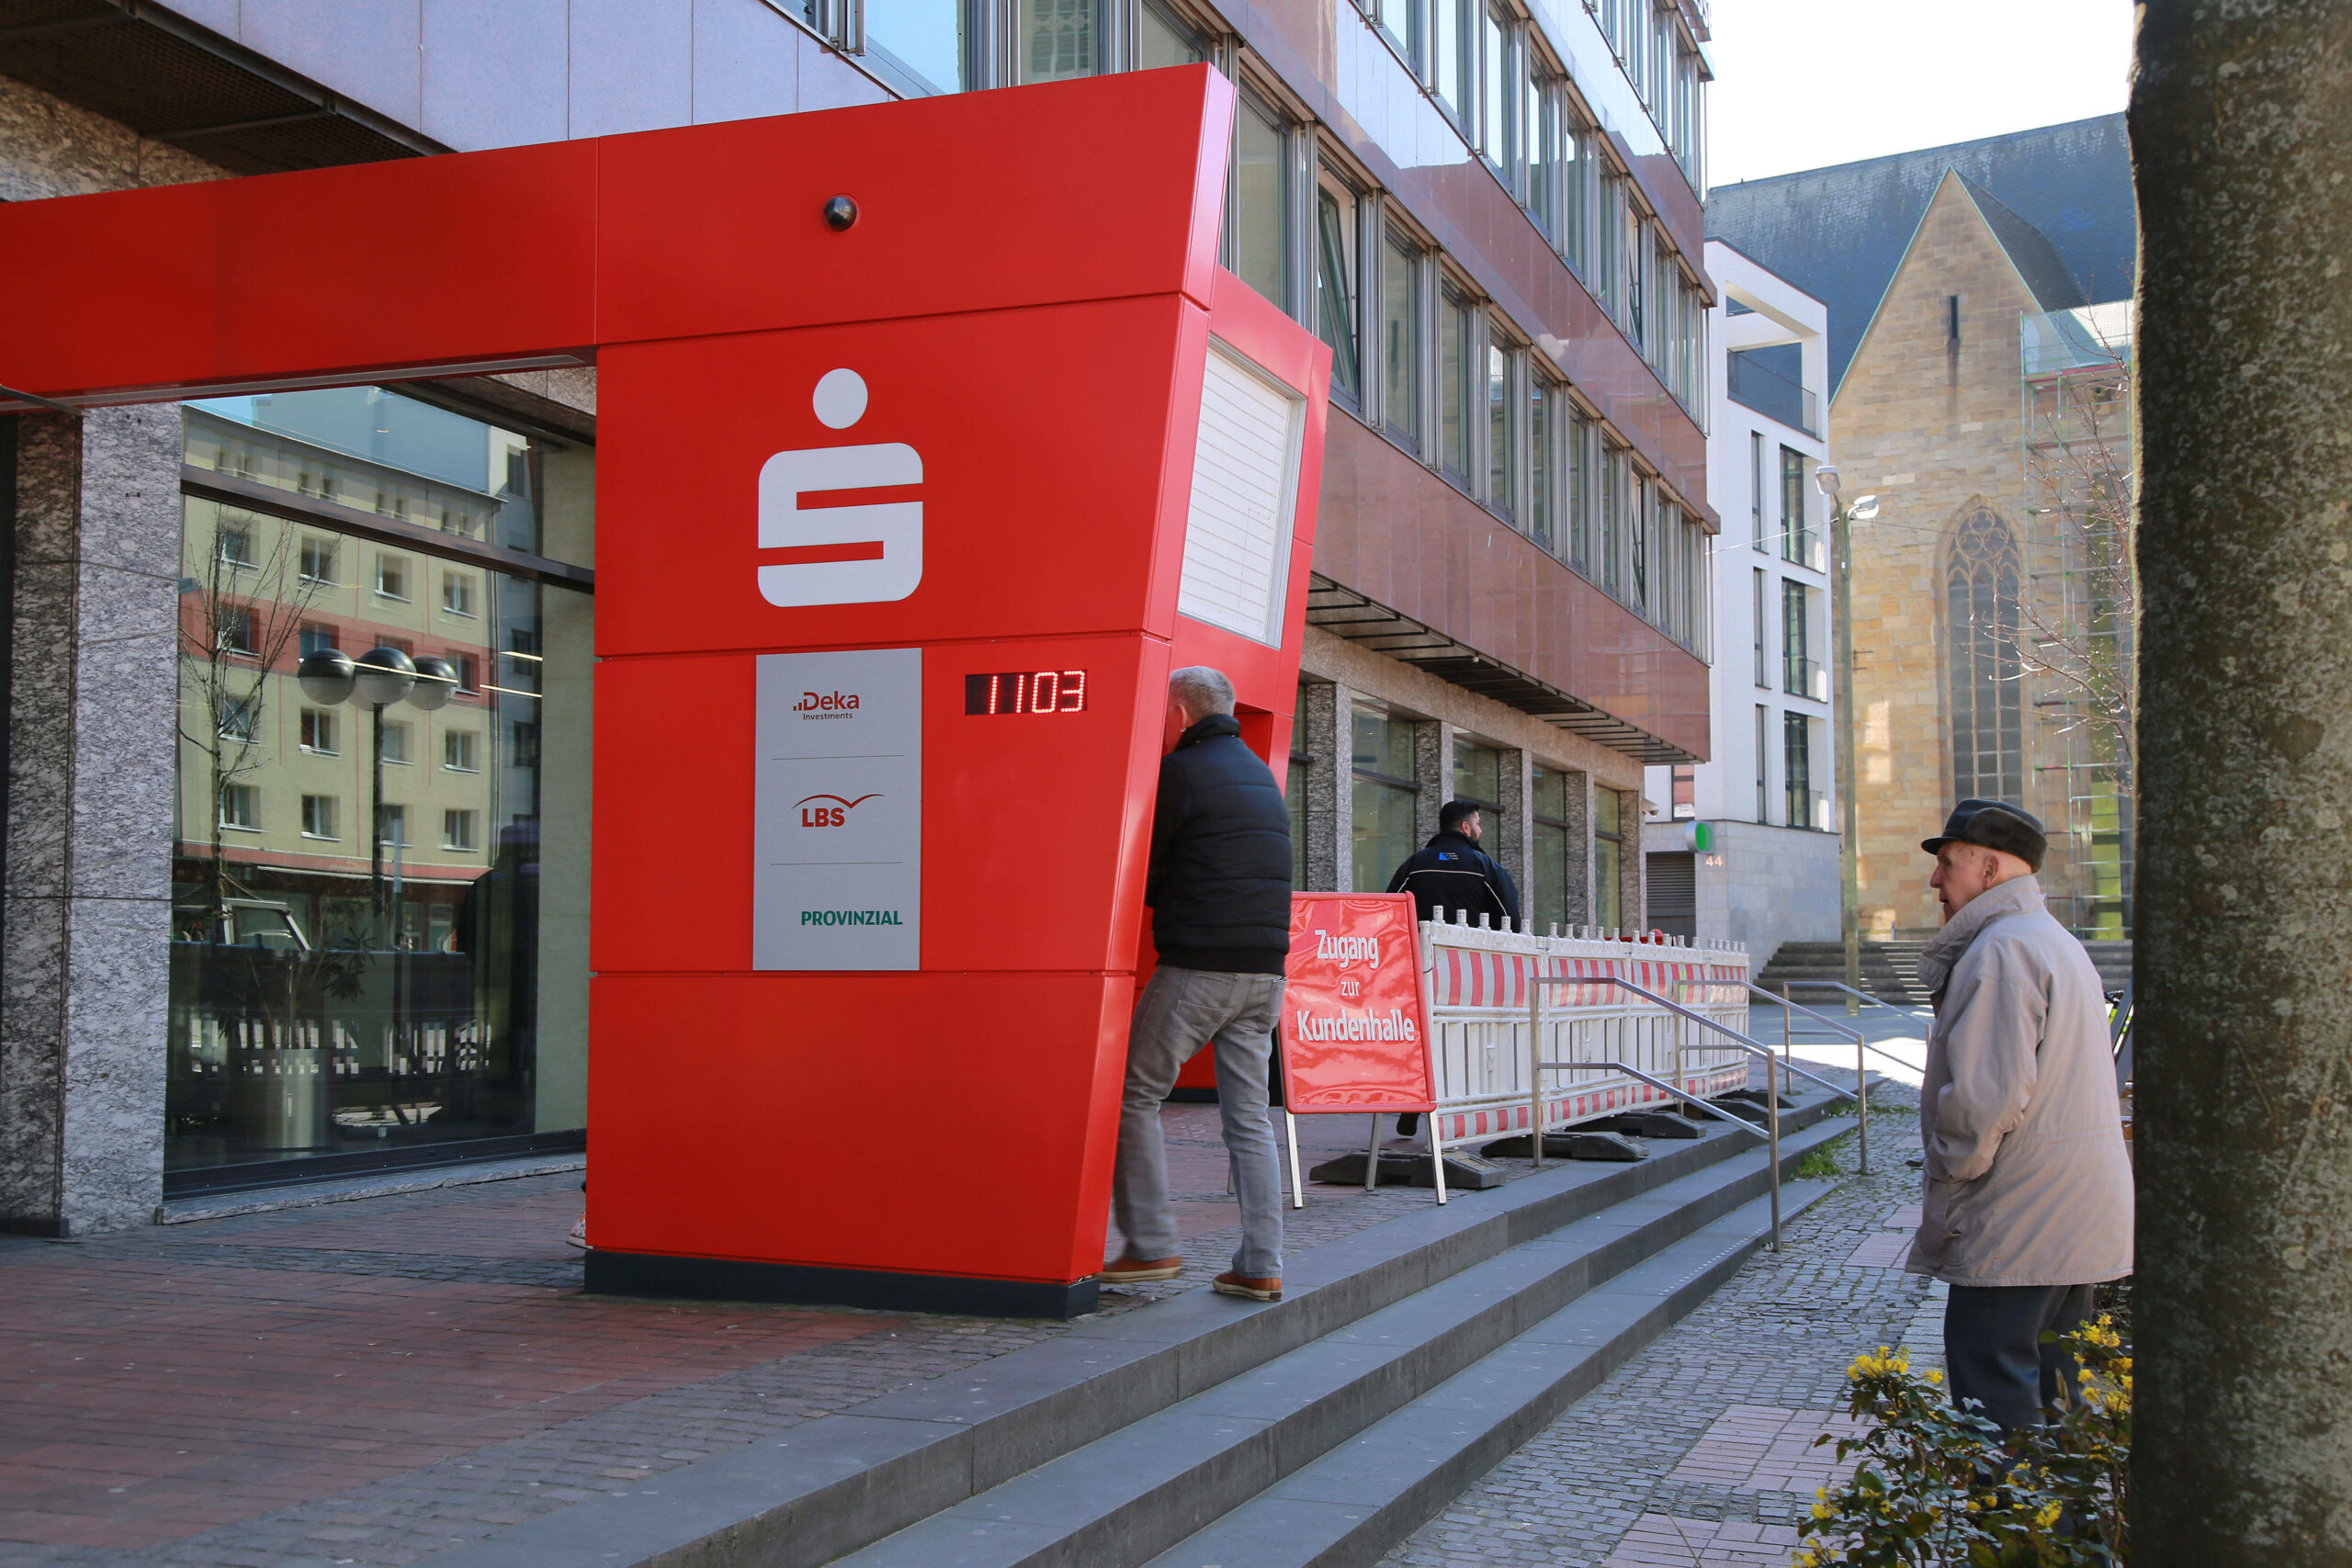 Gemeinsame Geldautomaten: Volksbank und Sparkasse Dortmund kooperieren